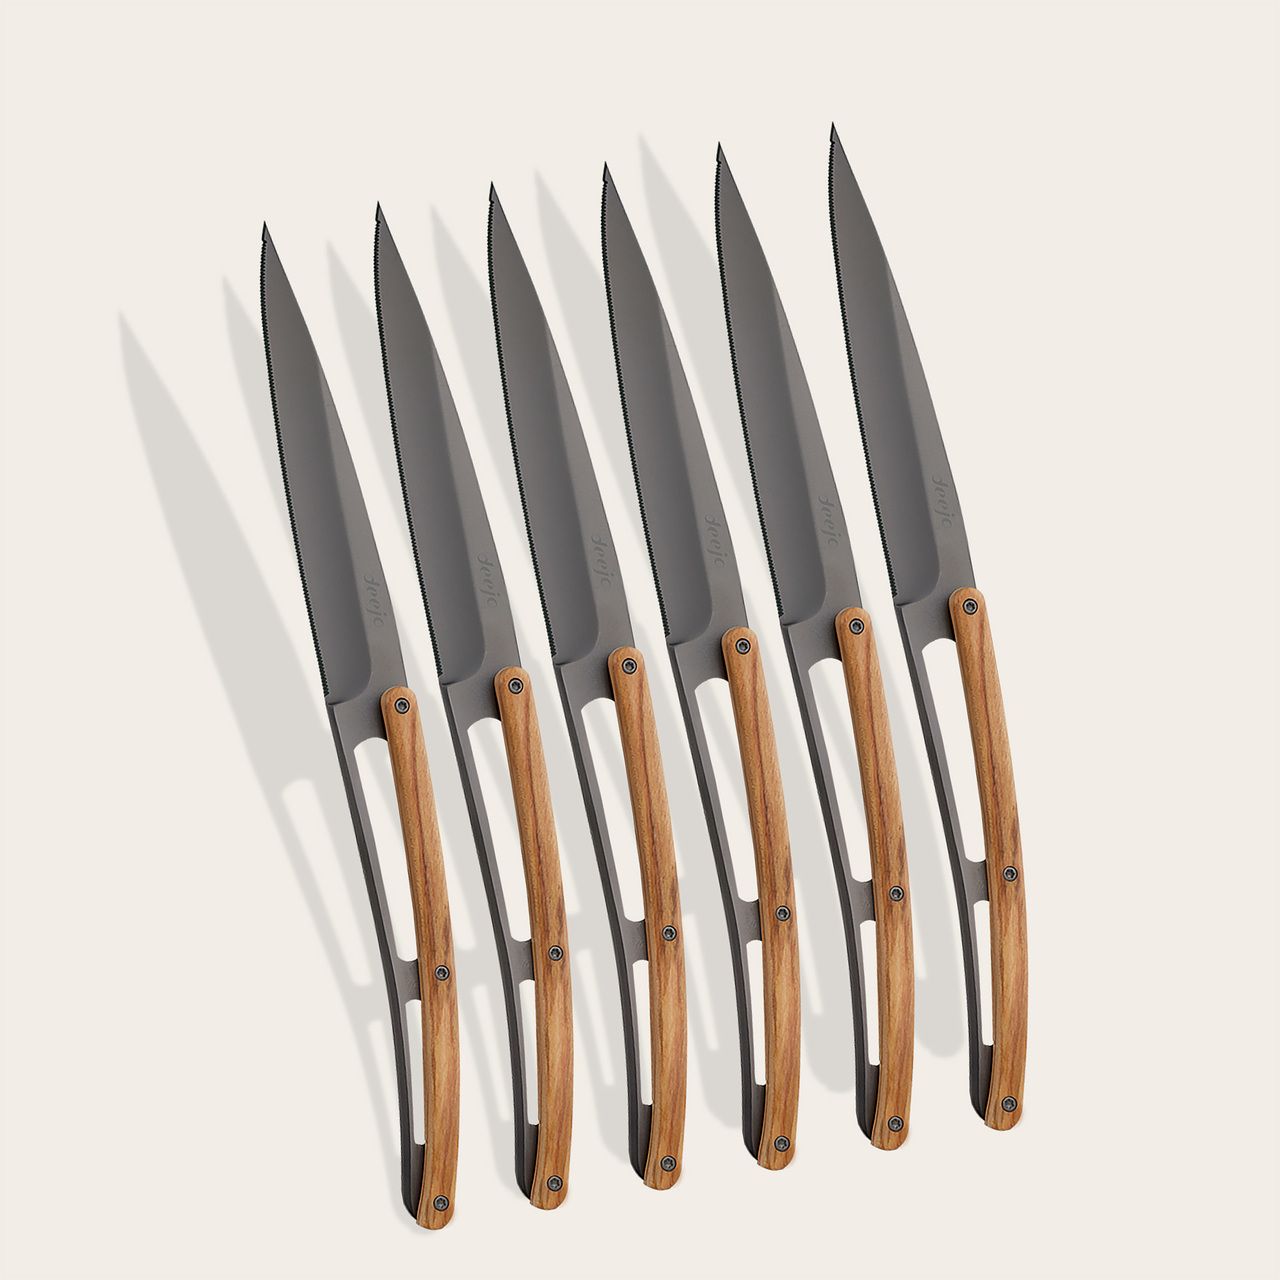 https://www.deejo.com/medias/produits/3083279292/22475_1280-6-deejo-steak-knives-serrated-olive-wood.jpg